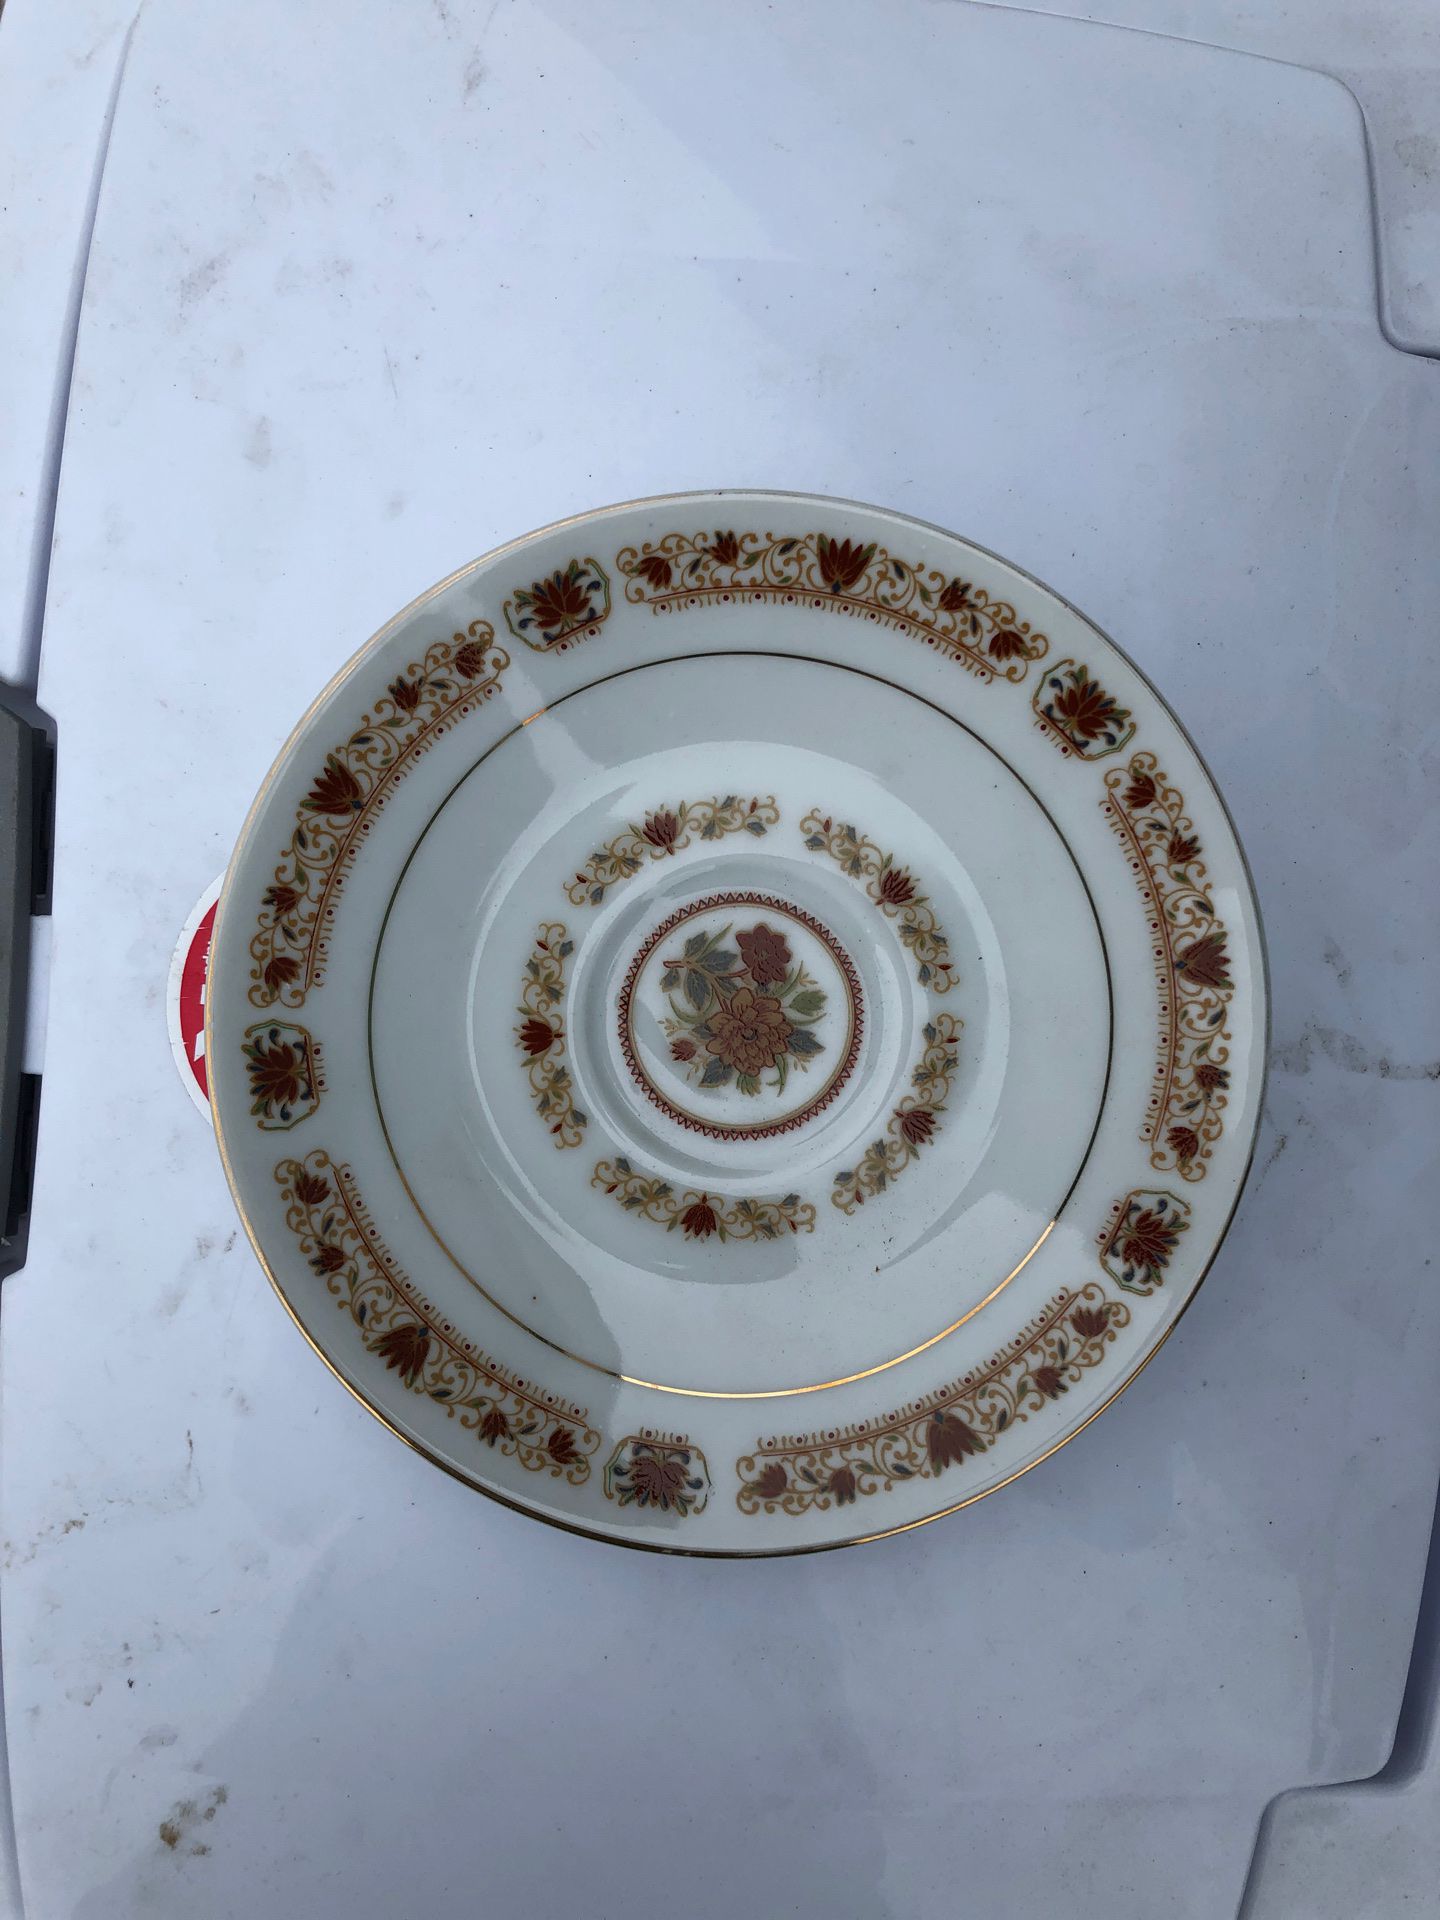 Small decorative plate